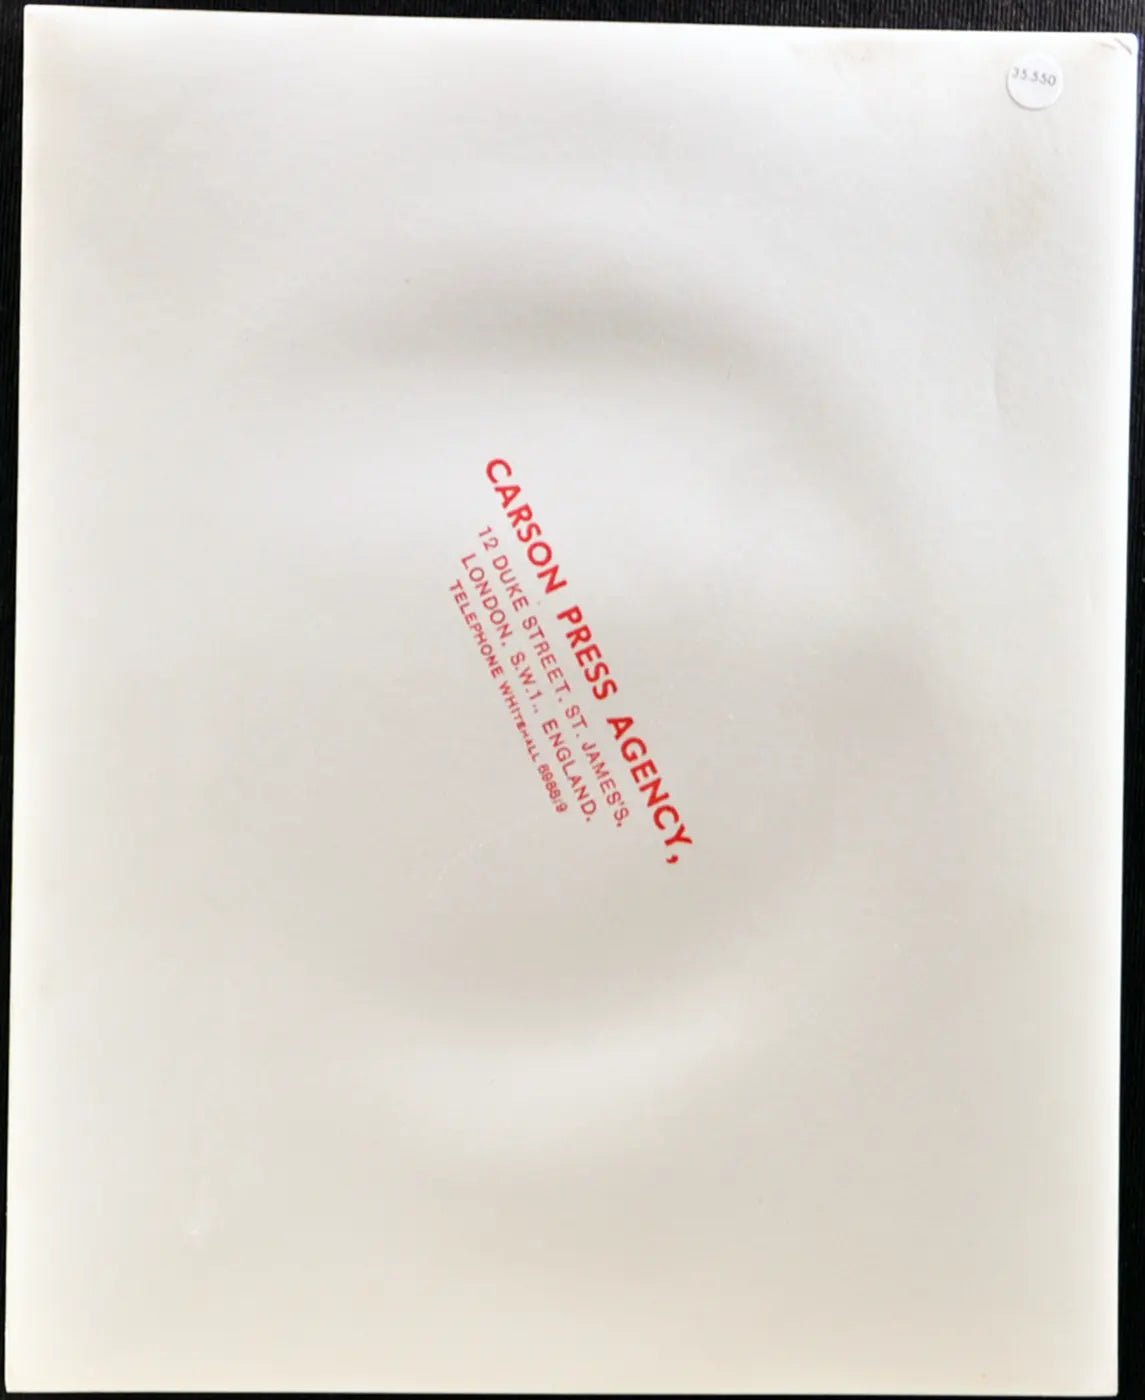 Laurel Brown Modella anni 80 Ft 35550 - Stampa 20x25 cm - Farabola Stampa ai sali d'argento